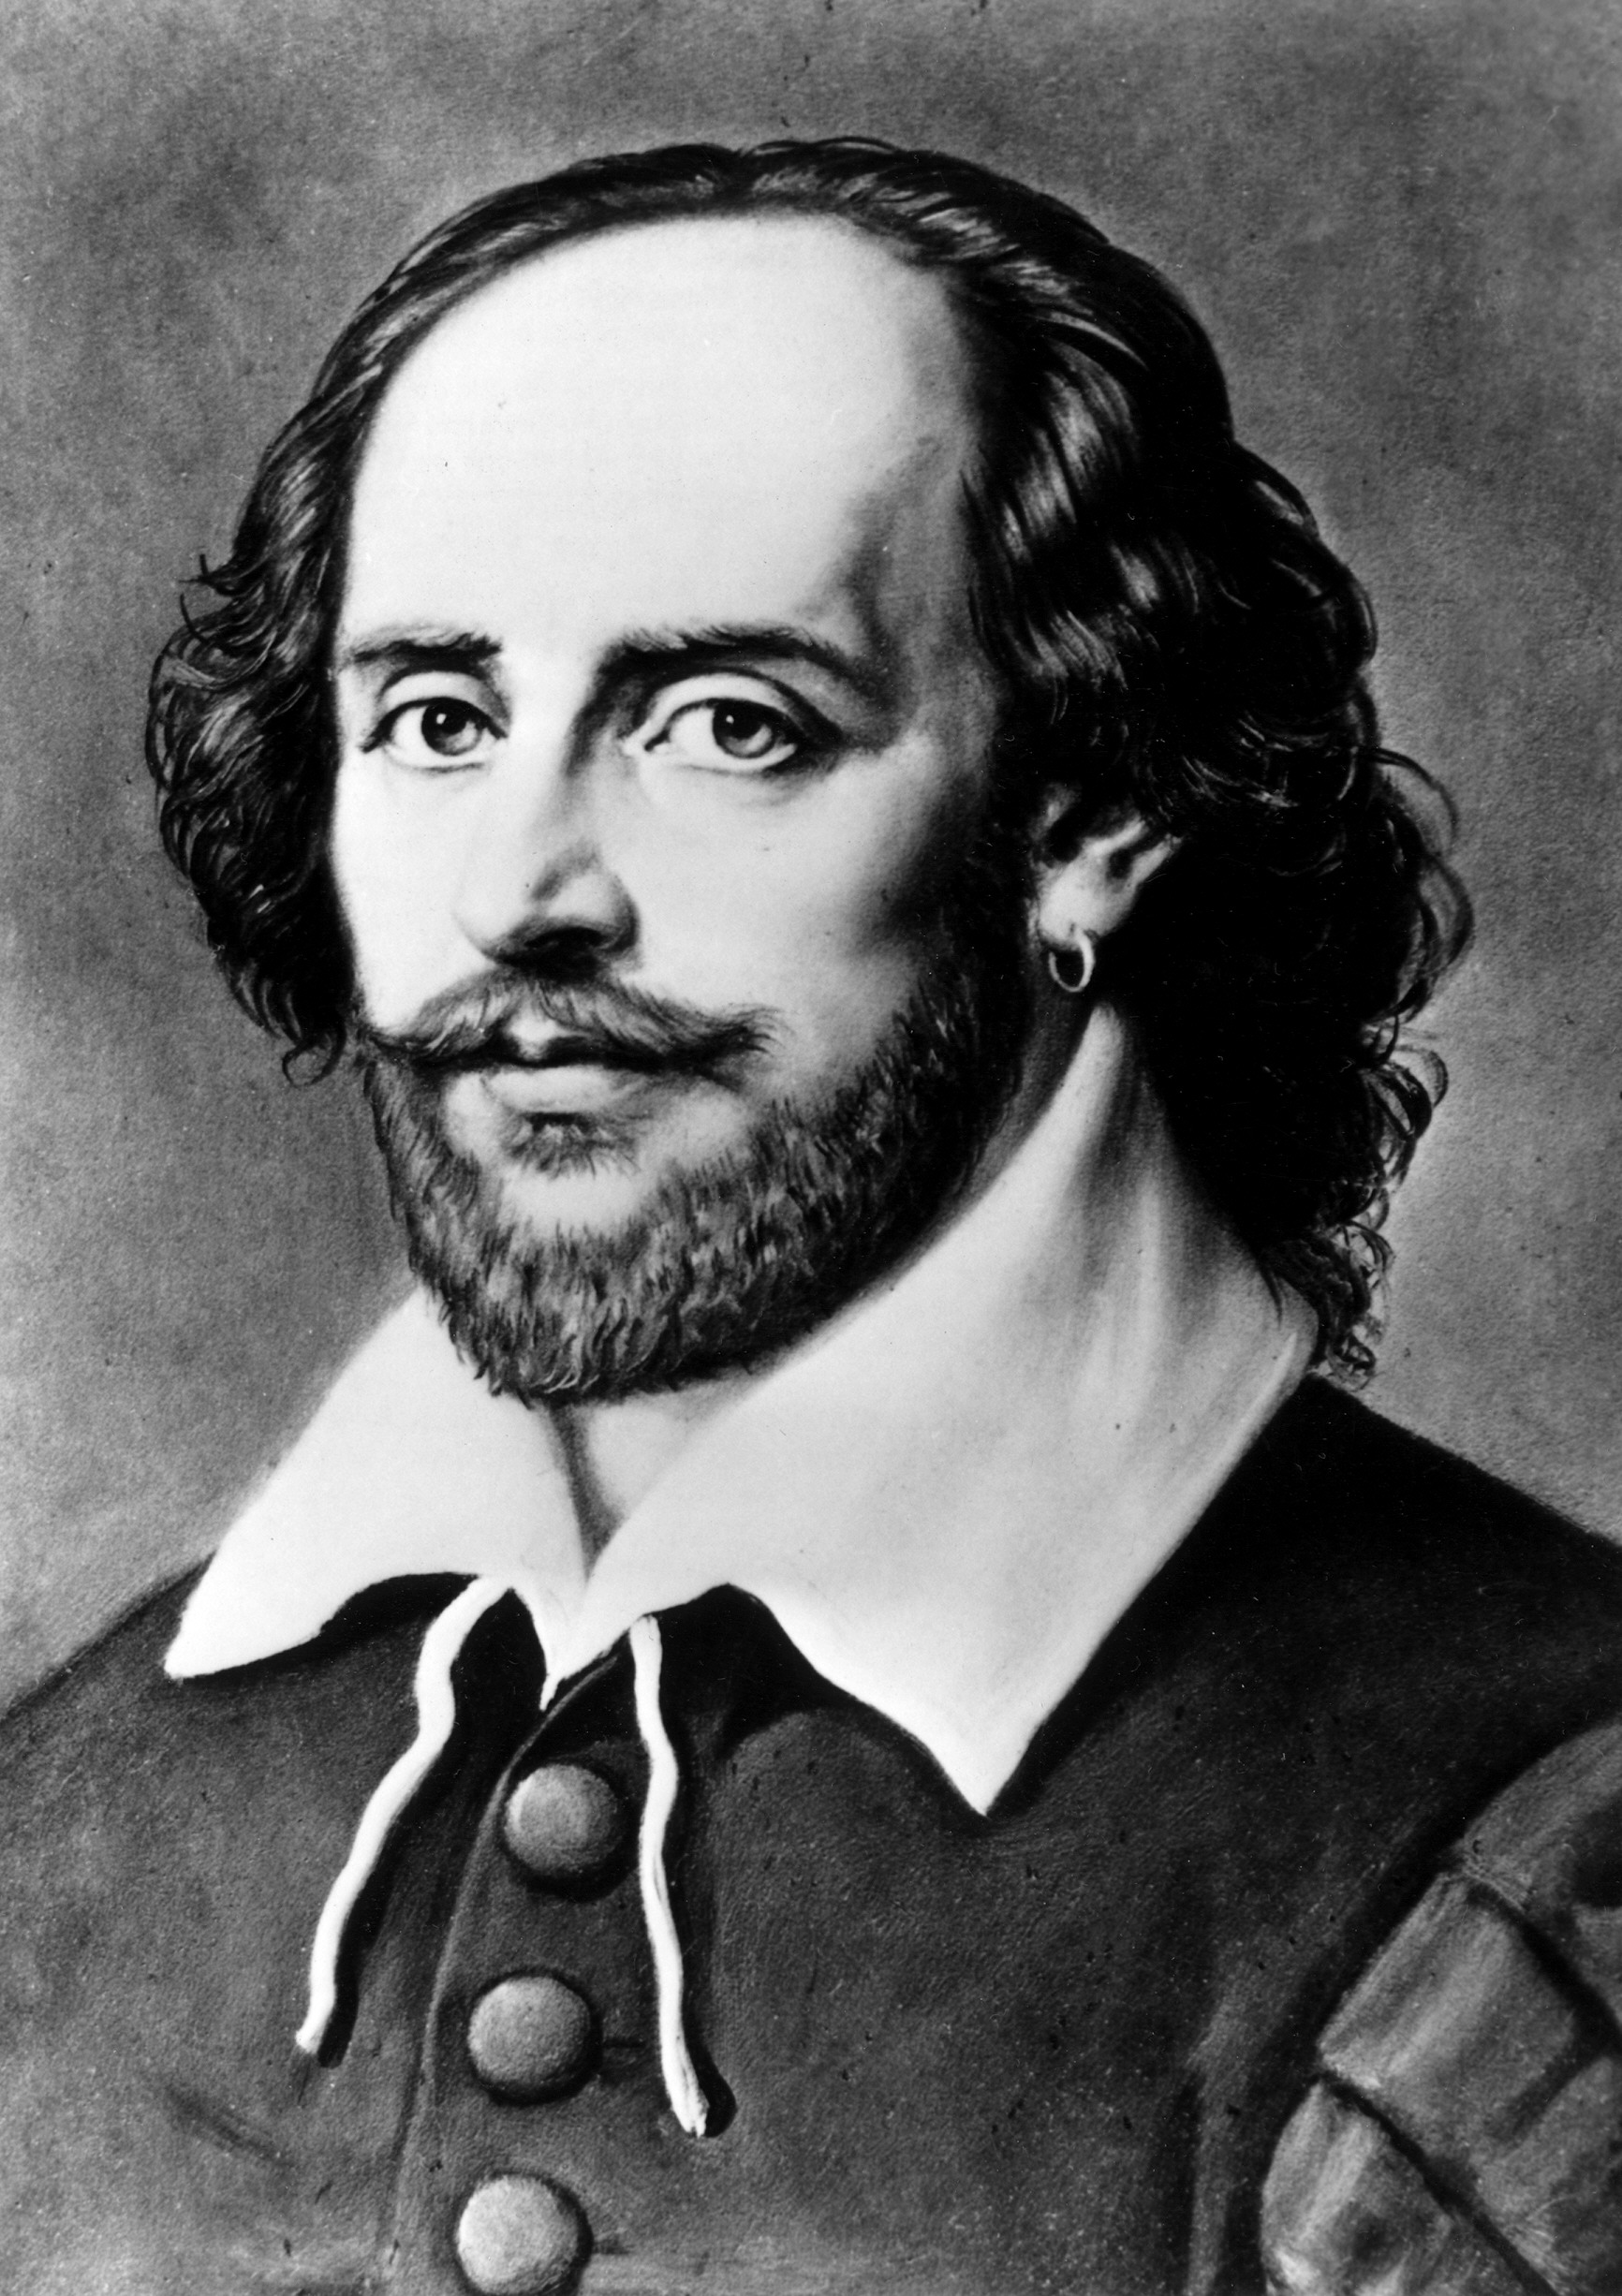 El misterio sobre la identidad de Shakespeare se mantiene abierto